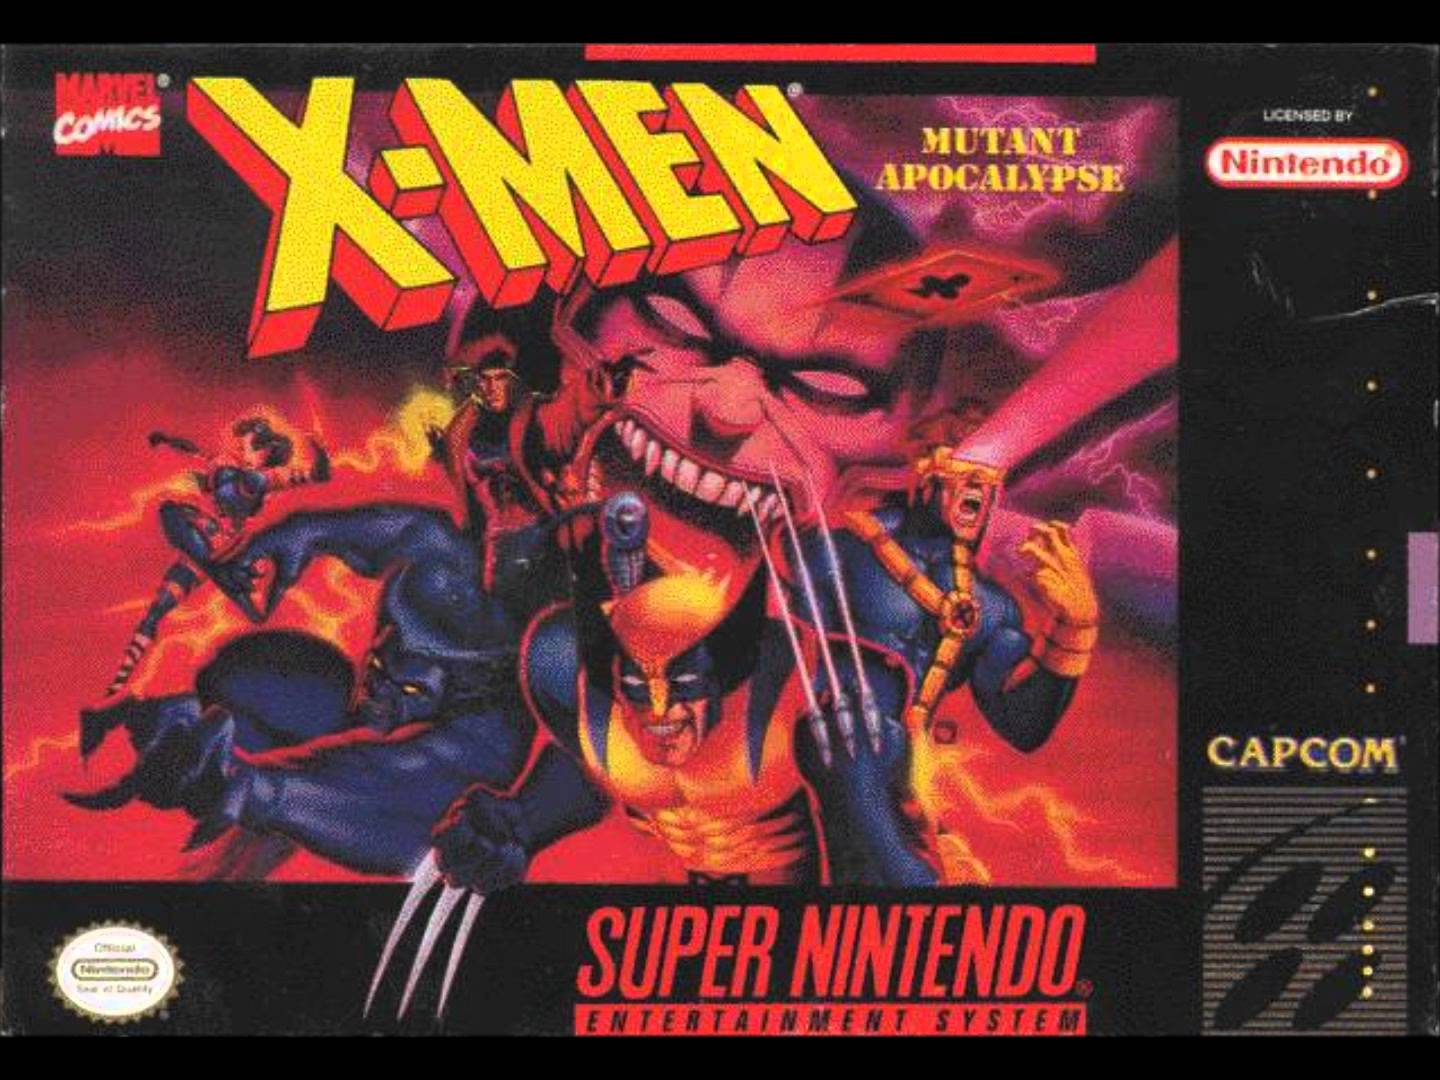 X-Men: Mutant Apocalypse HD wallpapers, Desktop wallpaper - most viewed